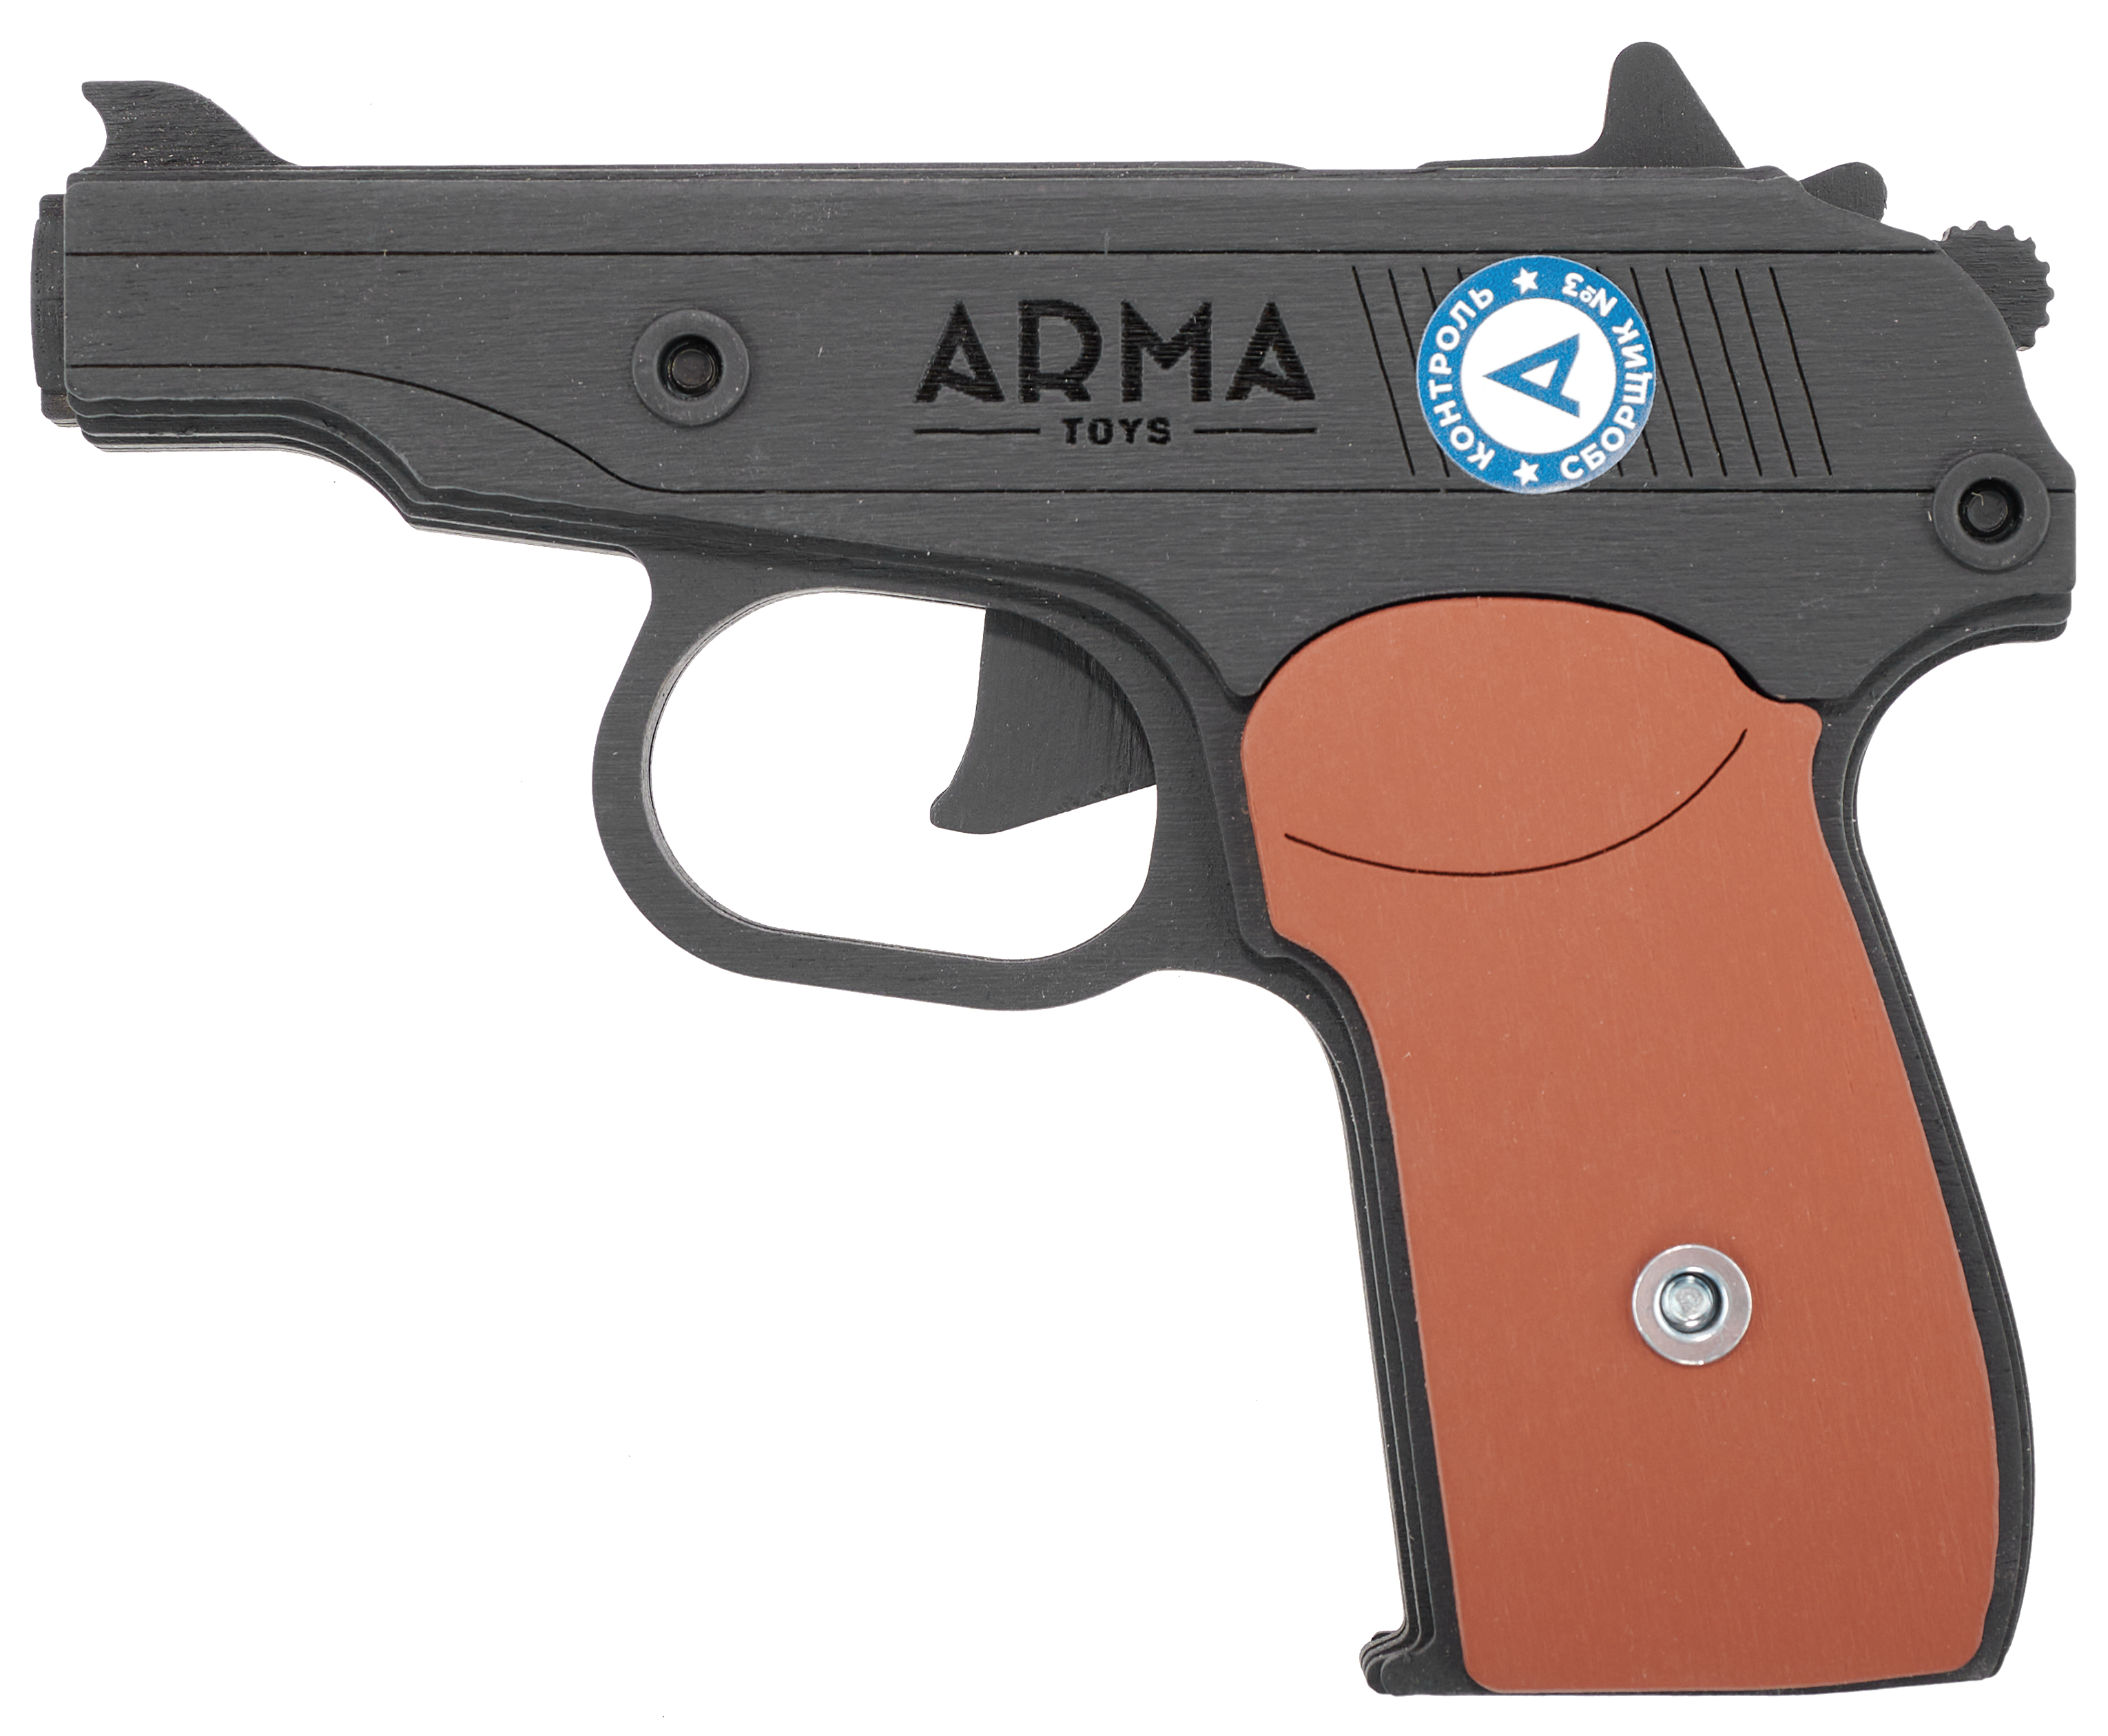 Резинкострел игрушечный Arma toys пистолет Макарова макет, ПМ, окрашенный, AT012K резинкострел arma toys пистолет апс макет стечкин ат009